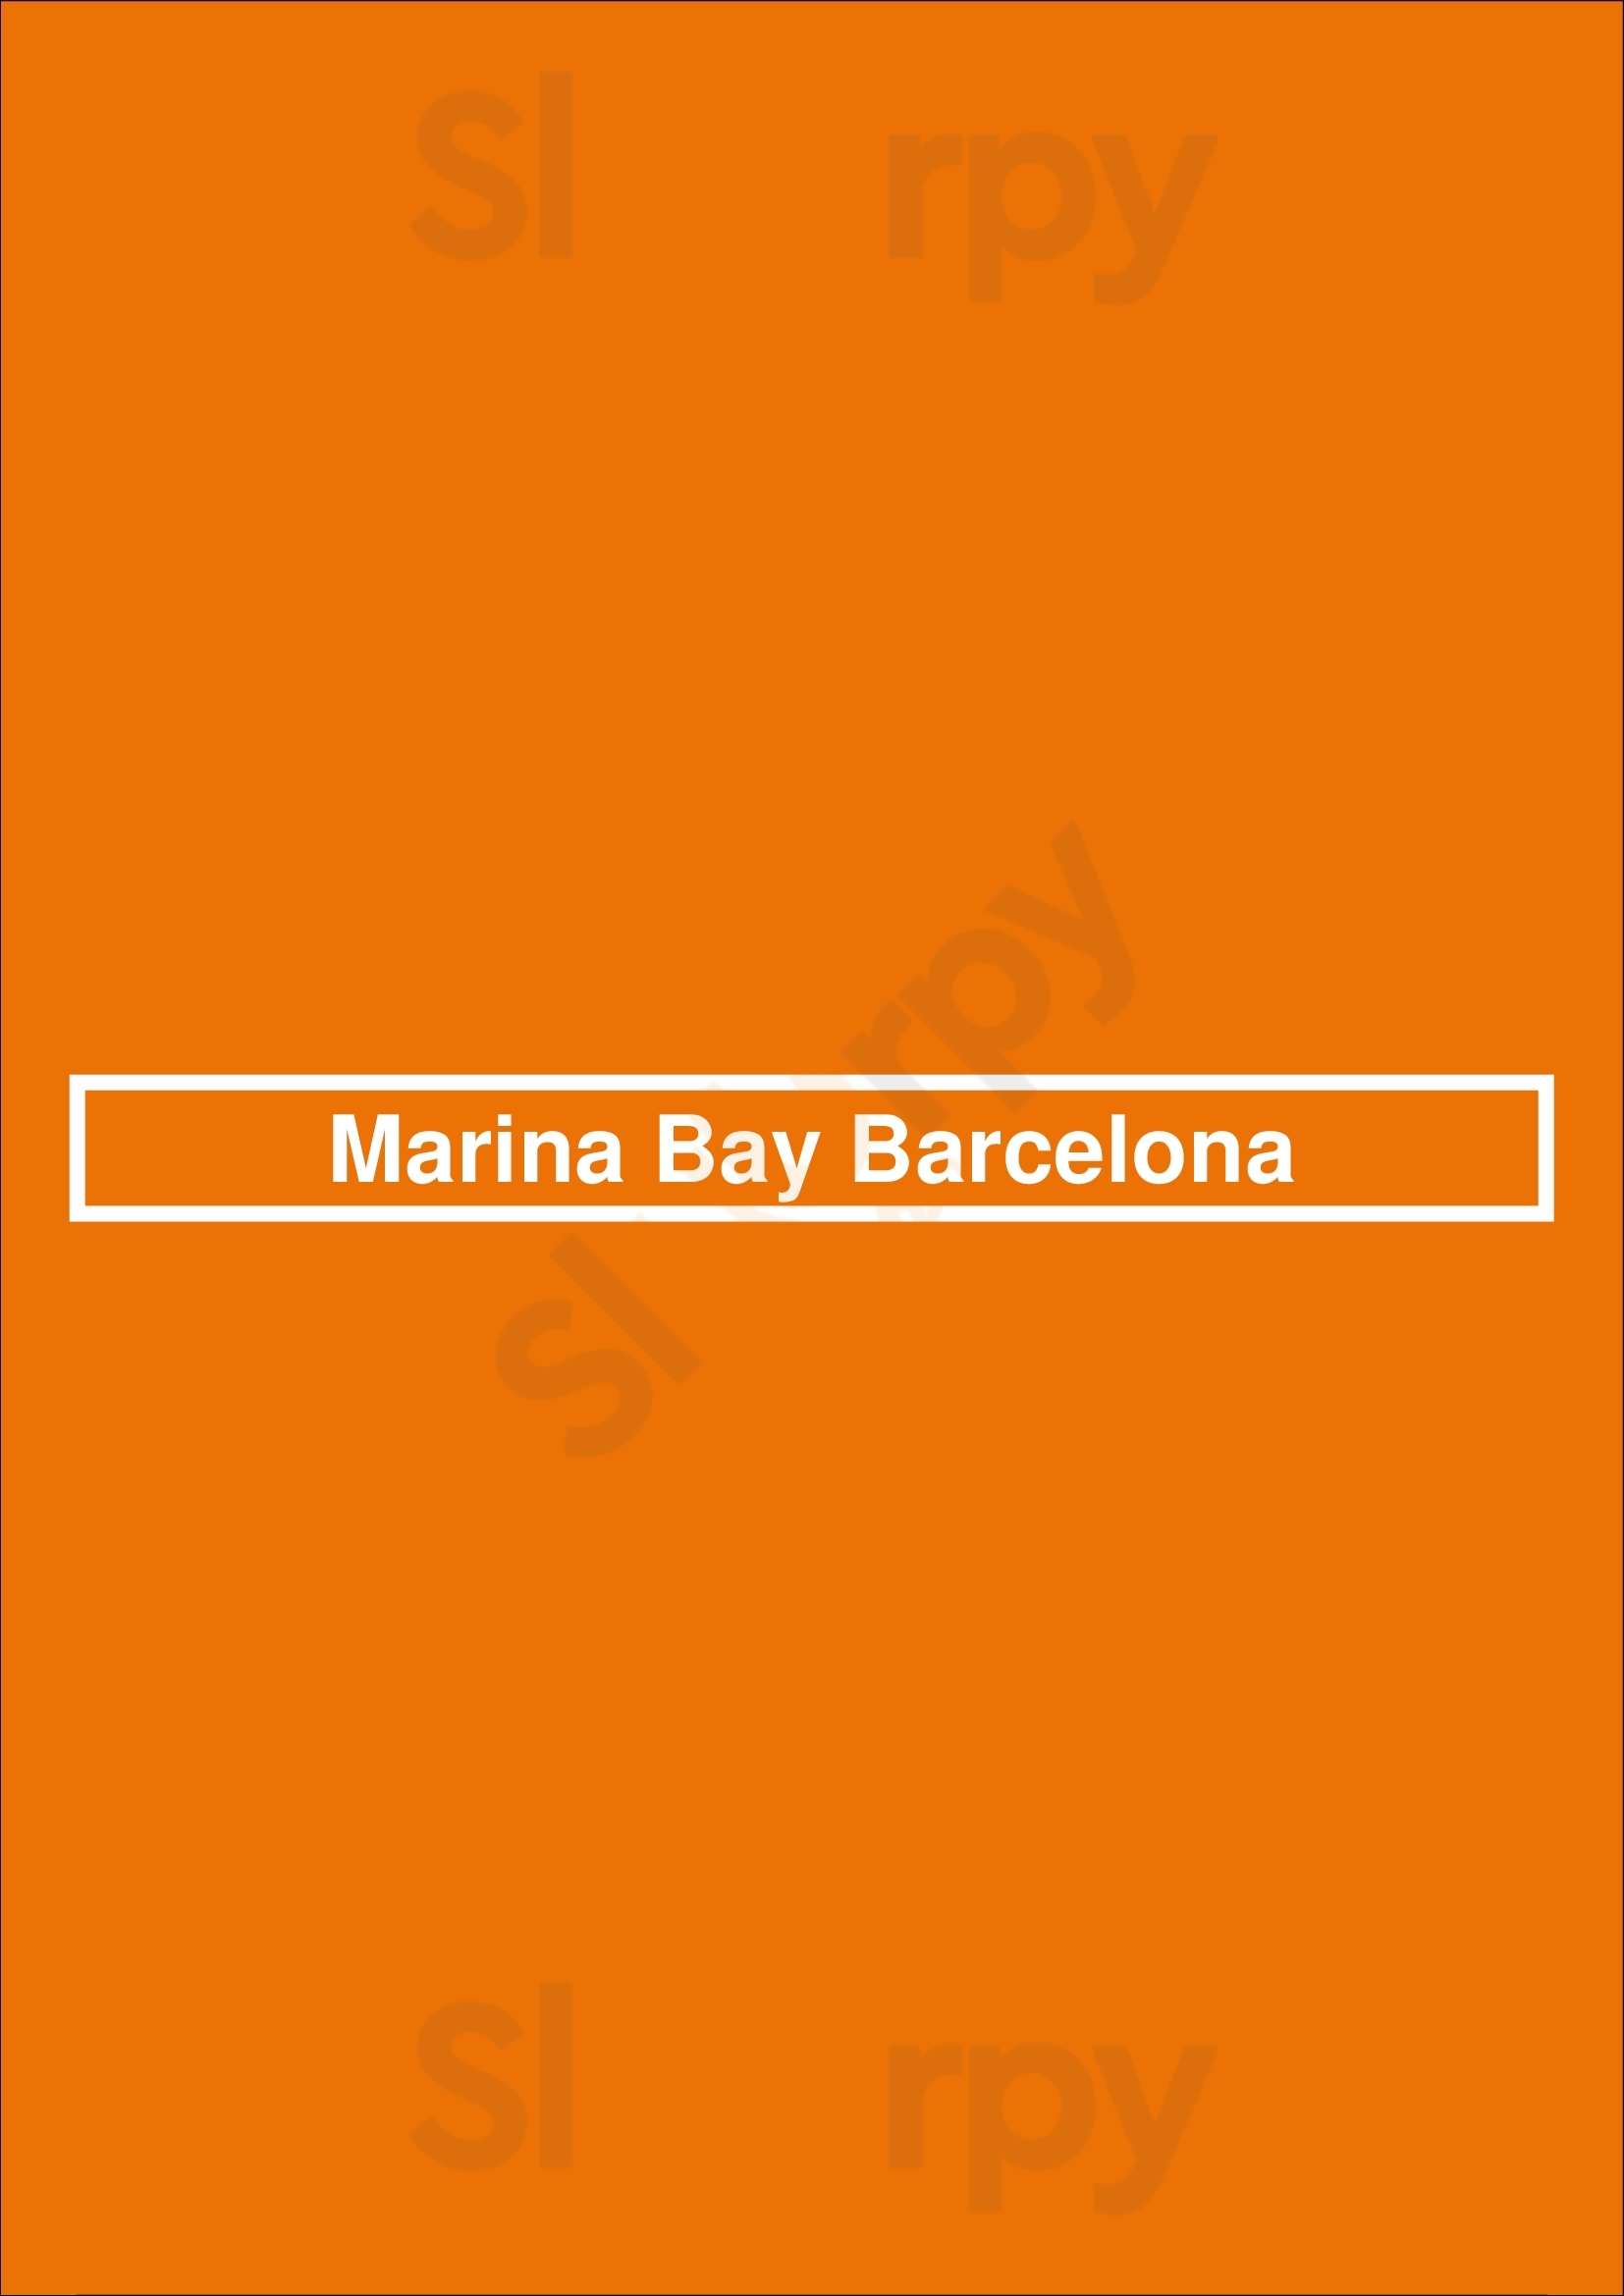 Marina Bay Barcelona Barcelona Menu - 1